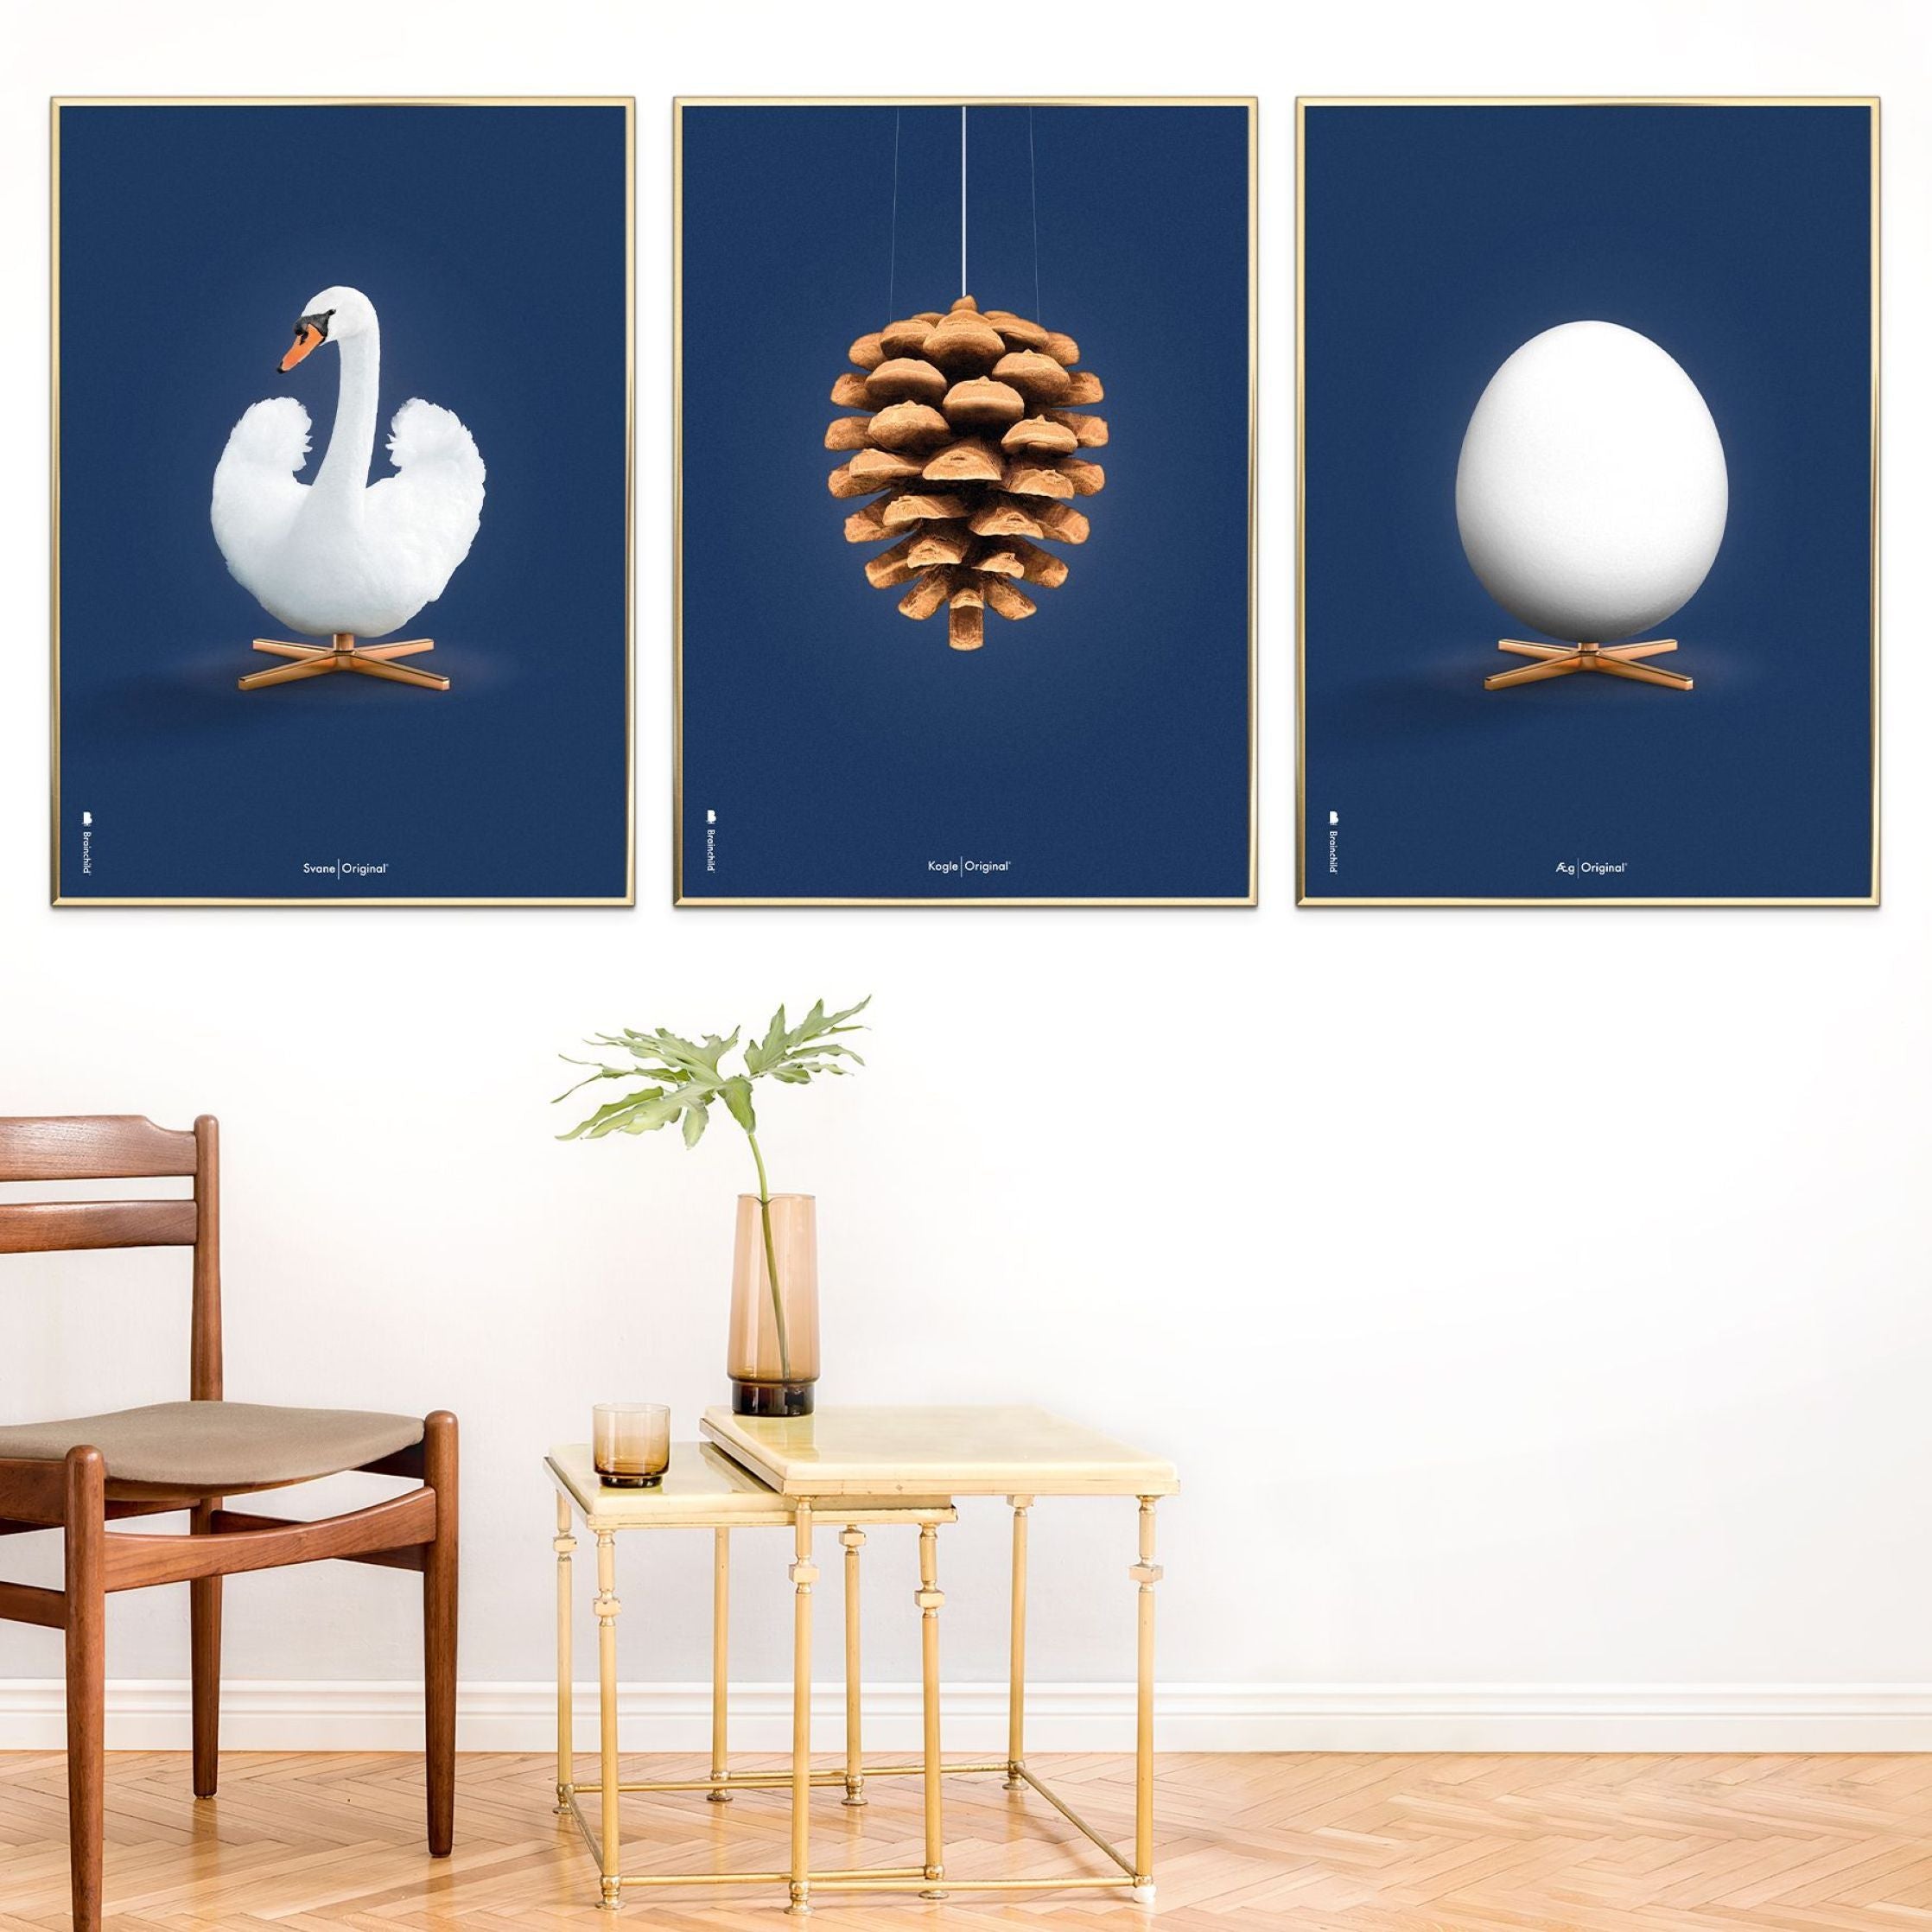 Brainchild Egg Classic Poster ohne Rahmen 30 X40 cm, dunkelblauer Hintergrund